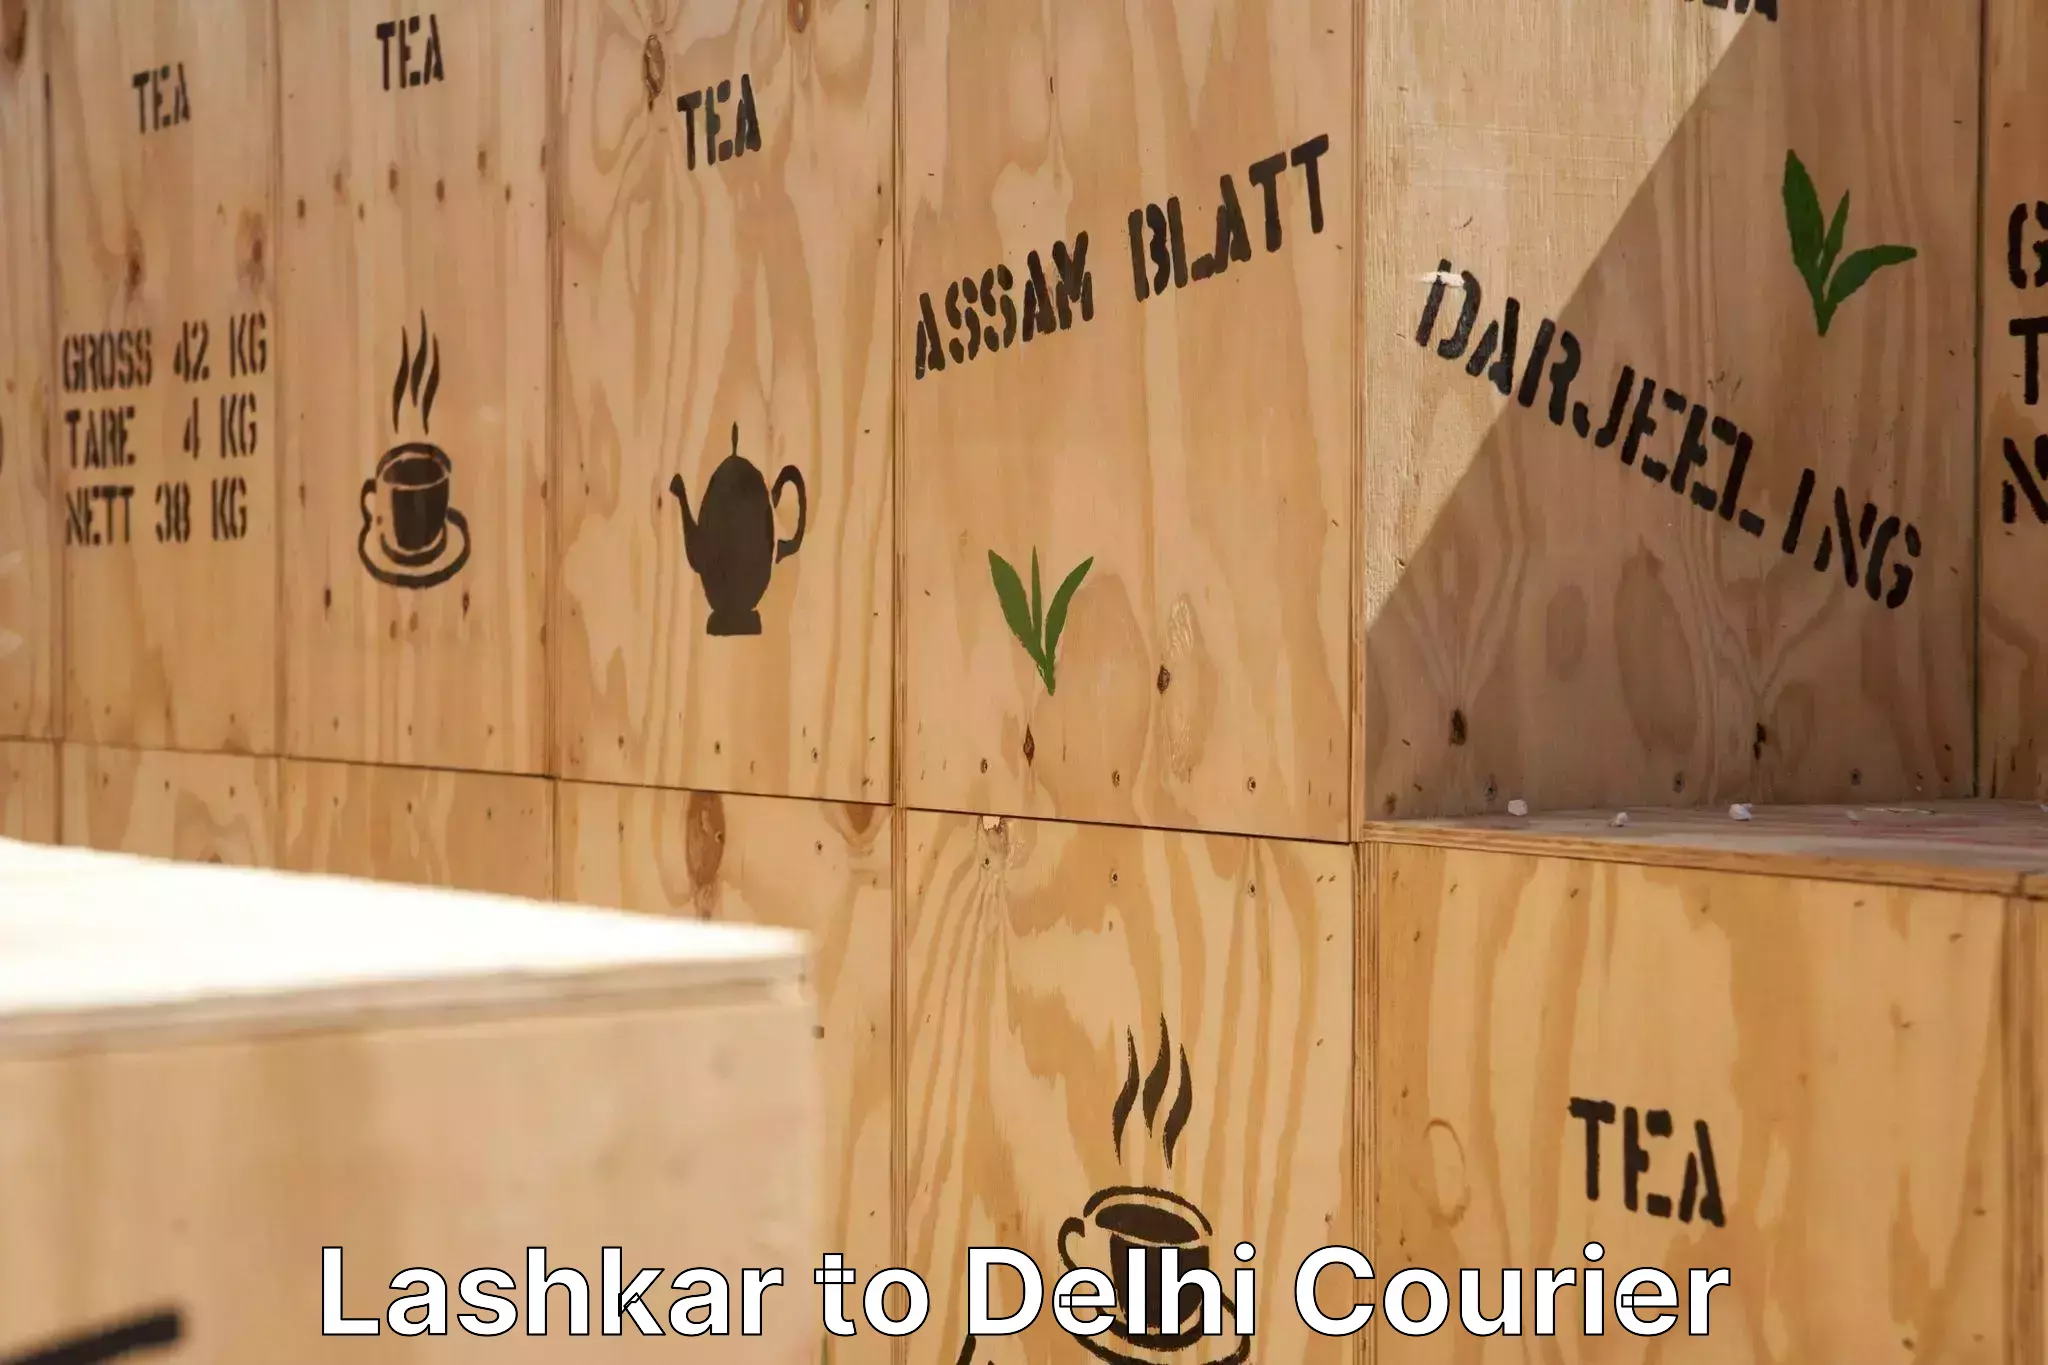 Household goods transporters Lashkar to East Delhi